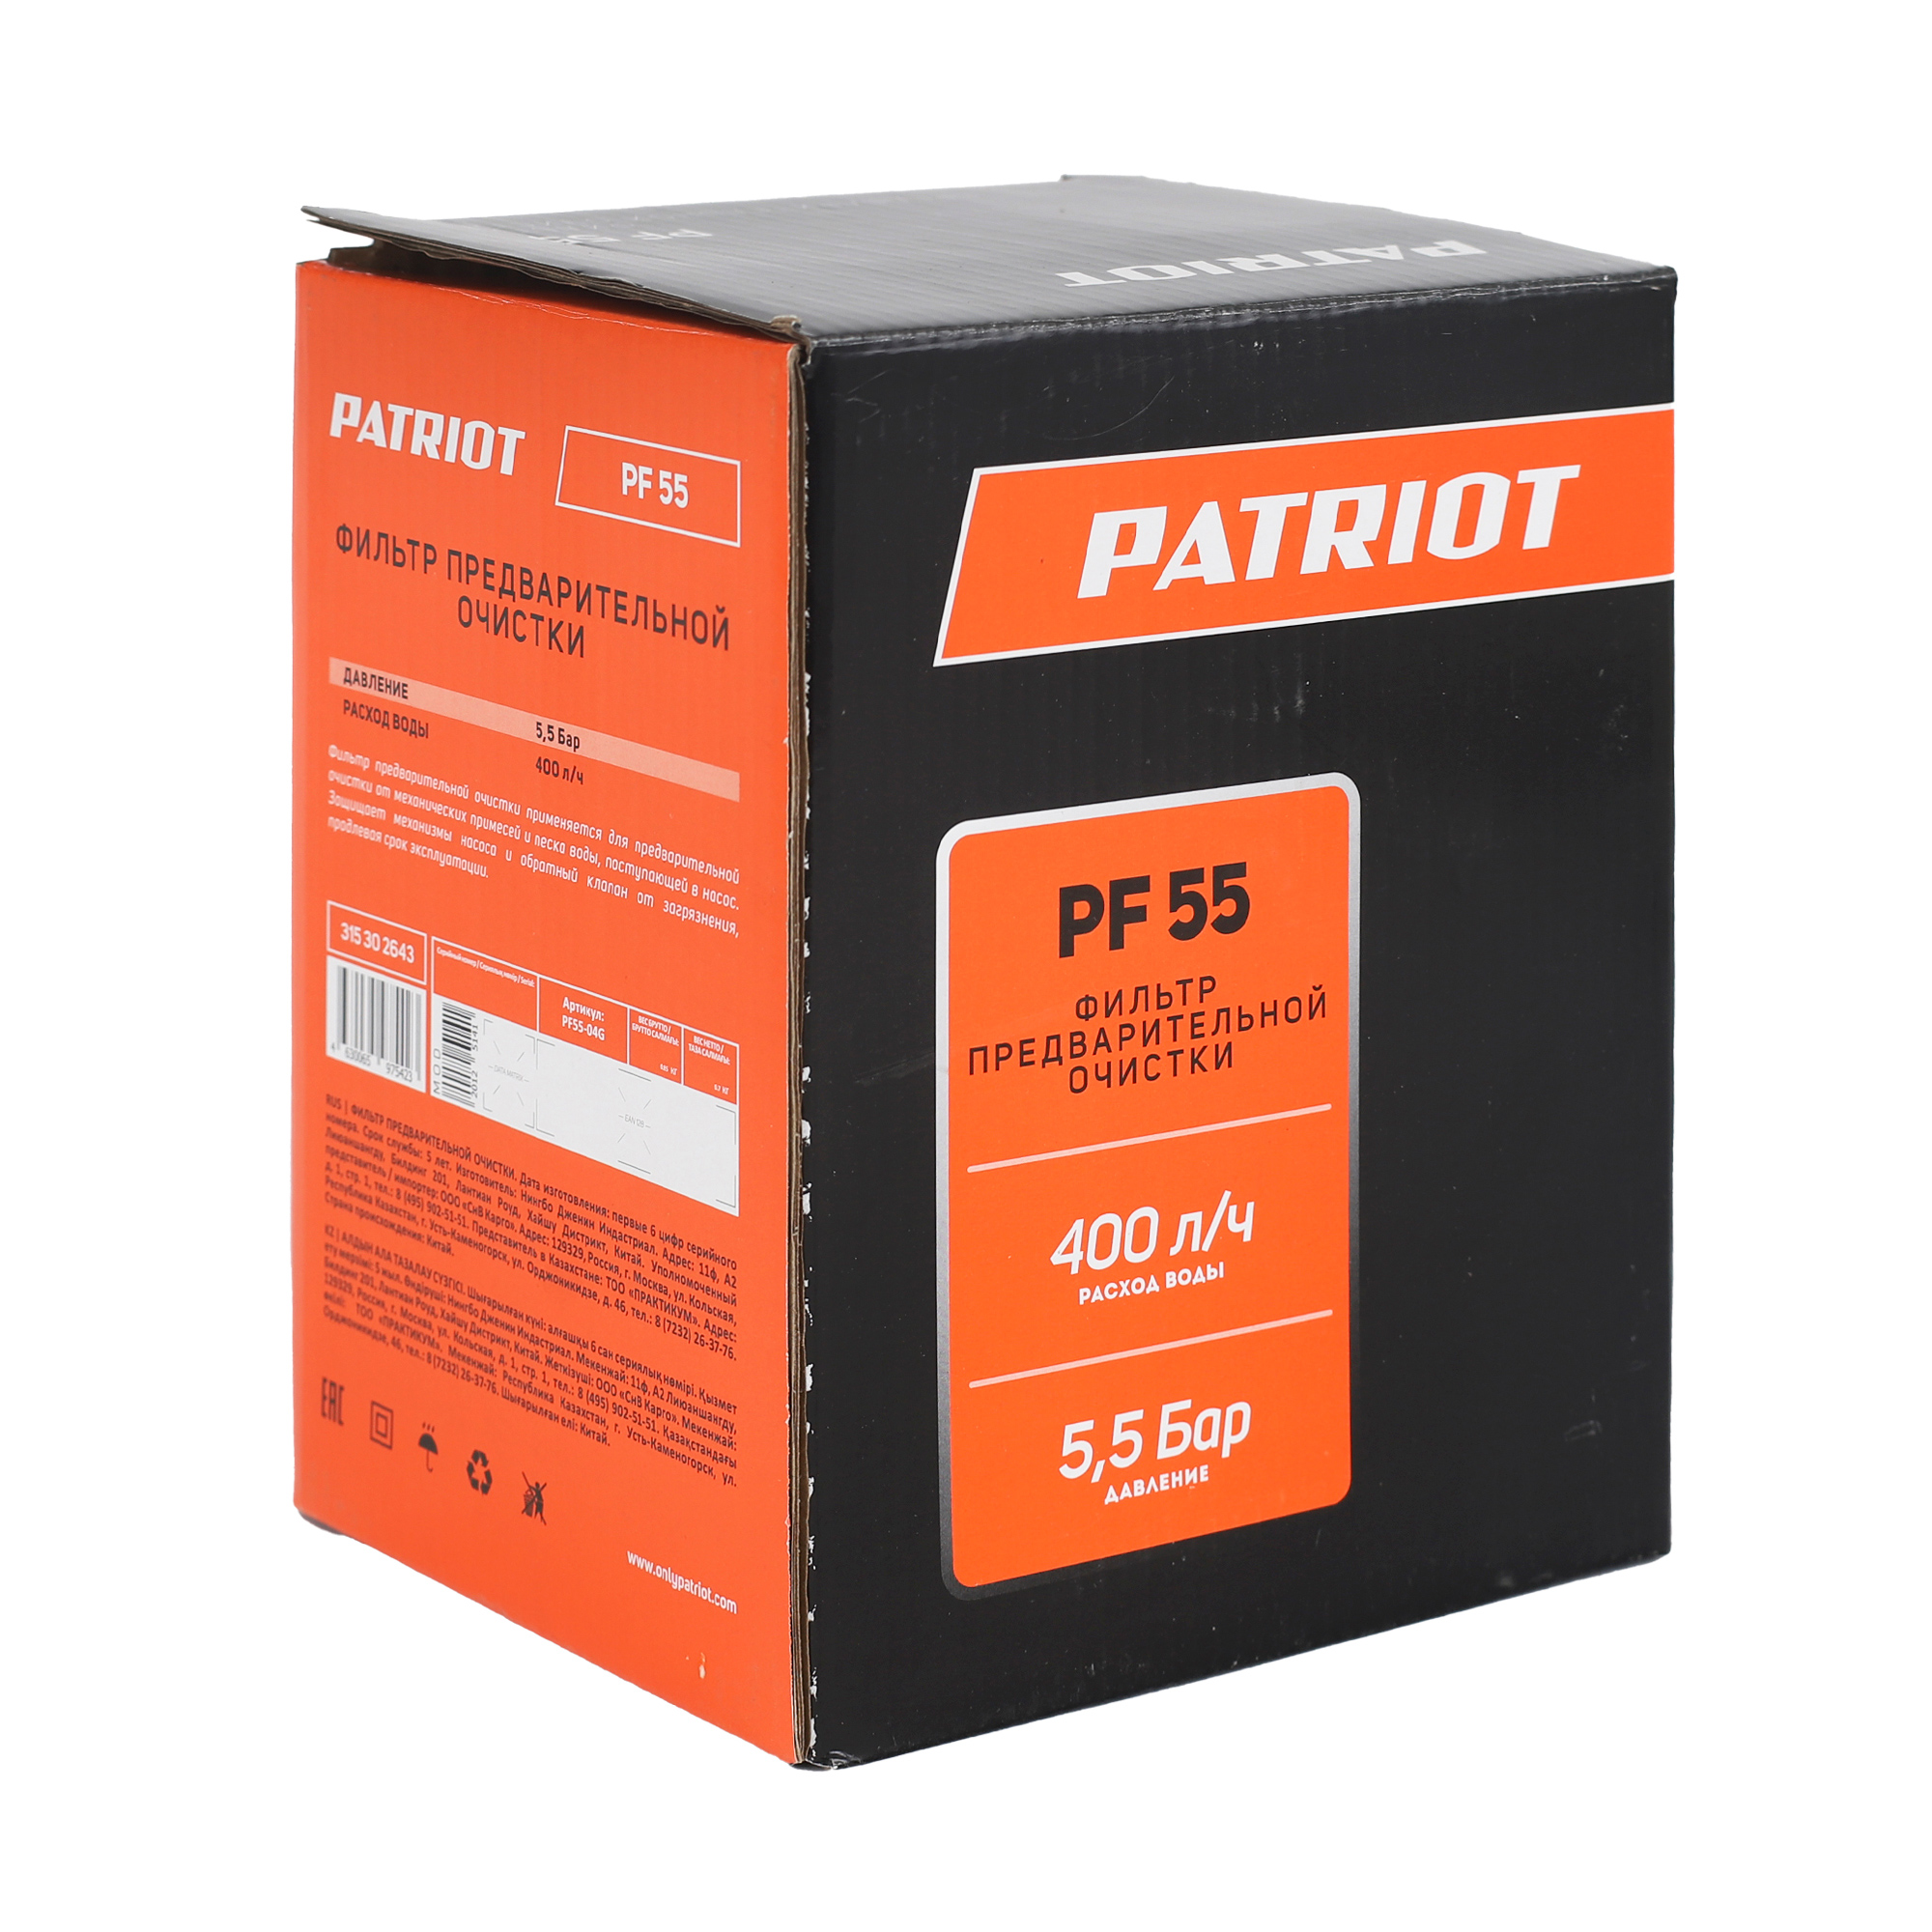 Фильтр предварительной очистки PATRIOT PF 55